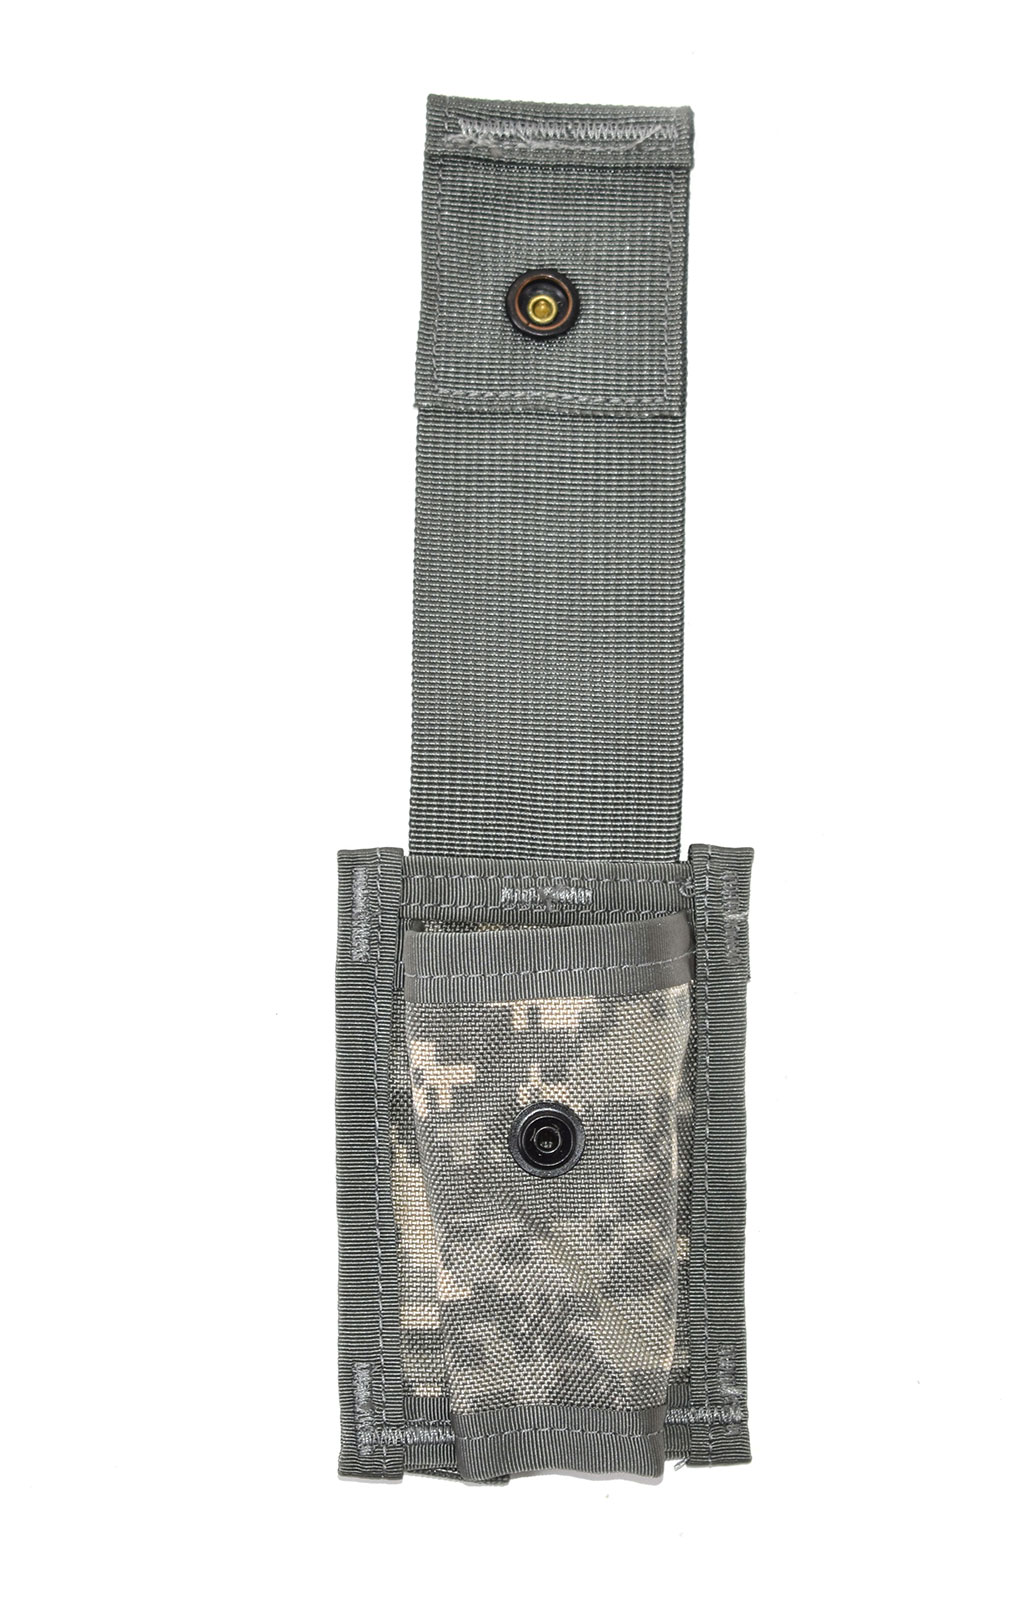 Подсумок гранатный 40mm High Expl. Single acu США